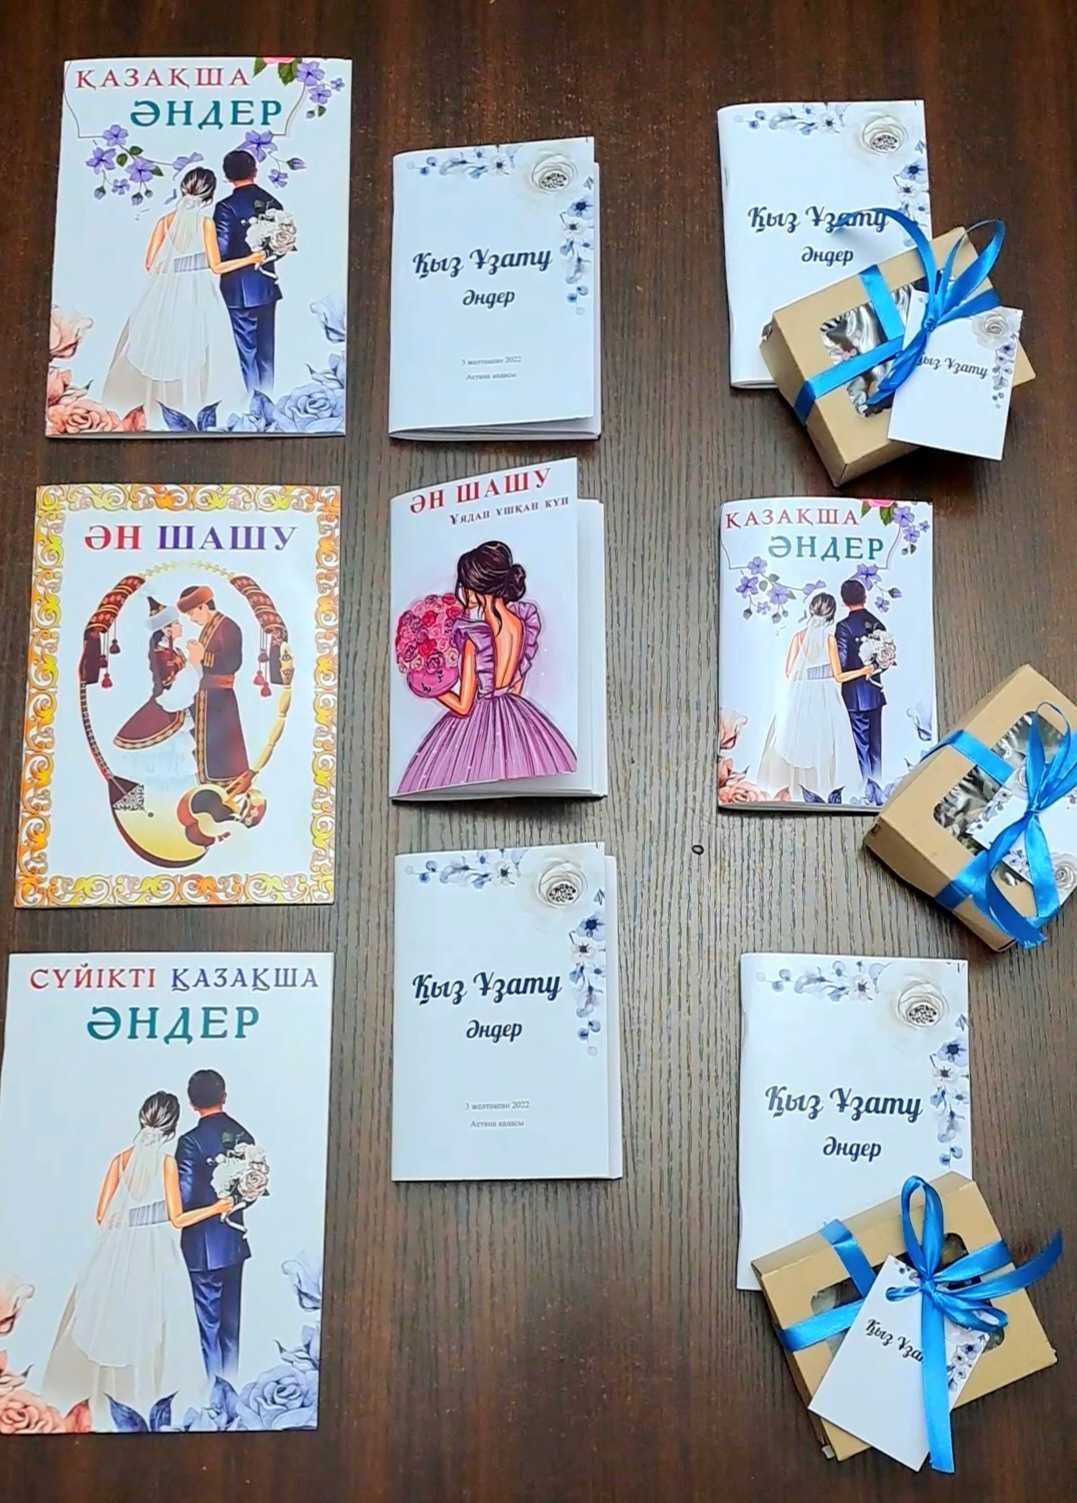 Сборник песен на казахском языке для праздничных мероприятий